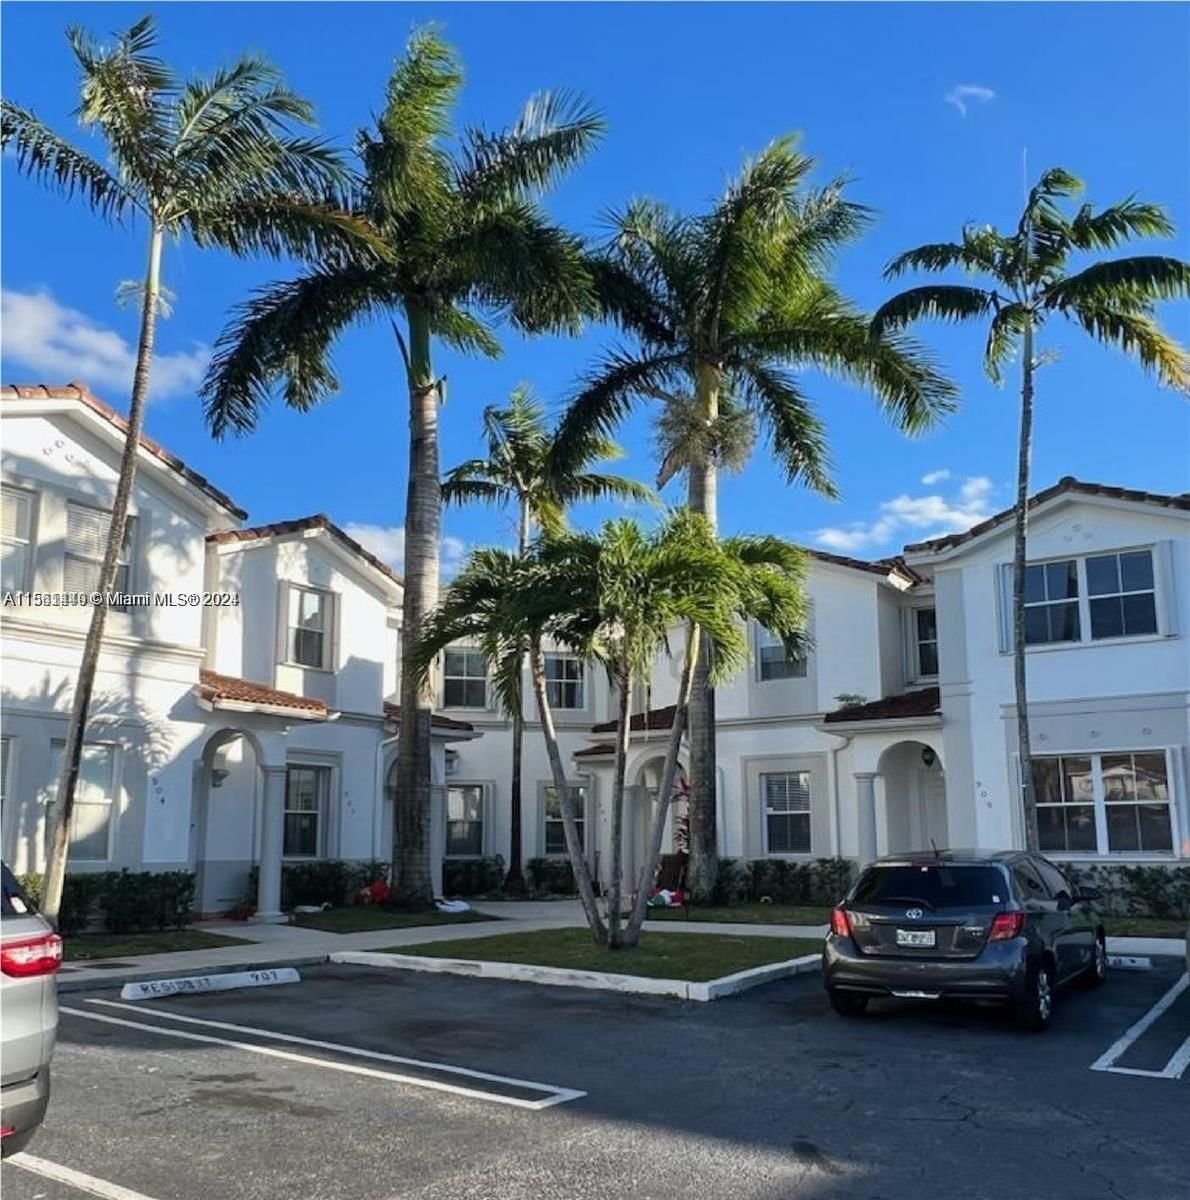 Real estate property located at 5570 107th Ave #907, Miami-Dade County, COSTA LINDA CONDO, Doral, FL